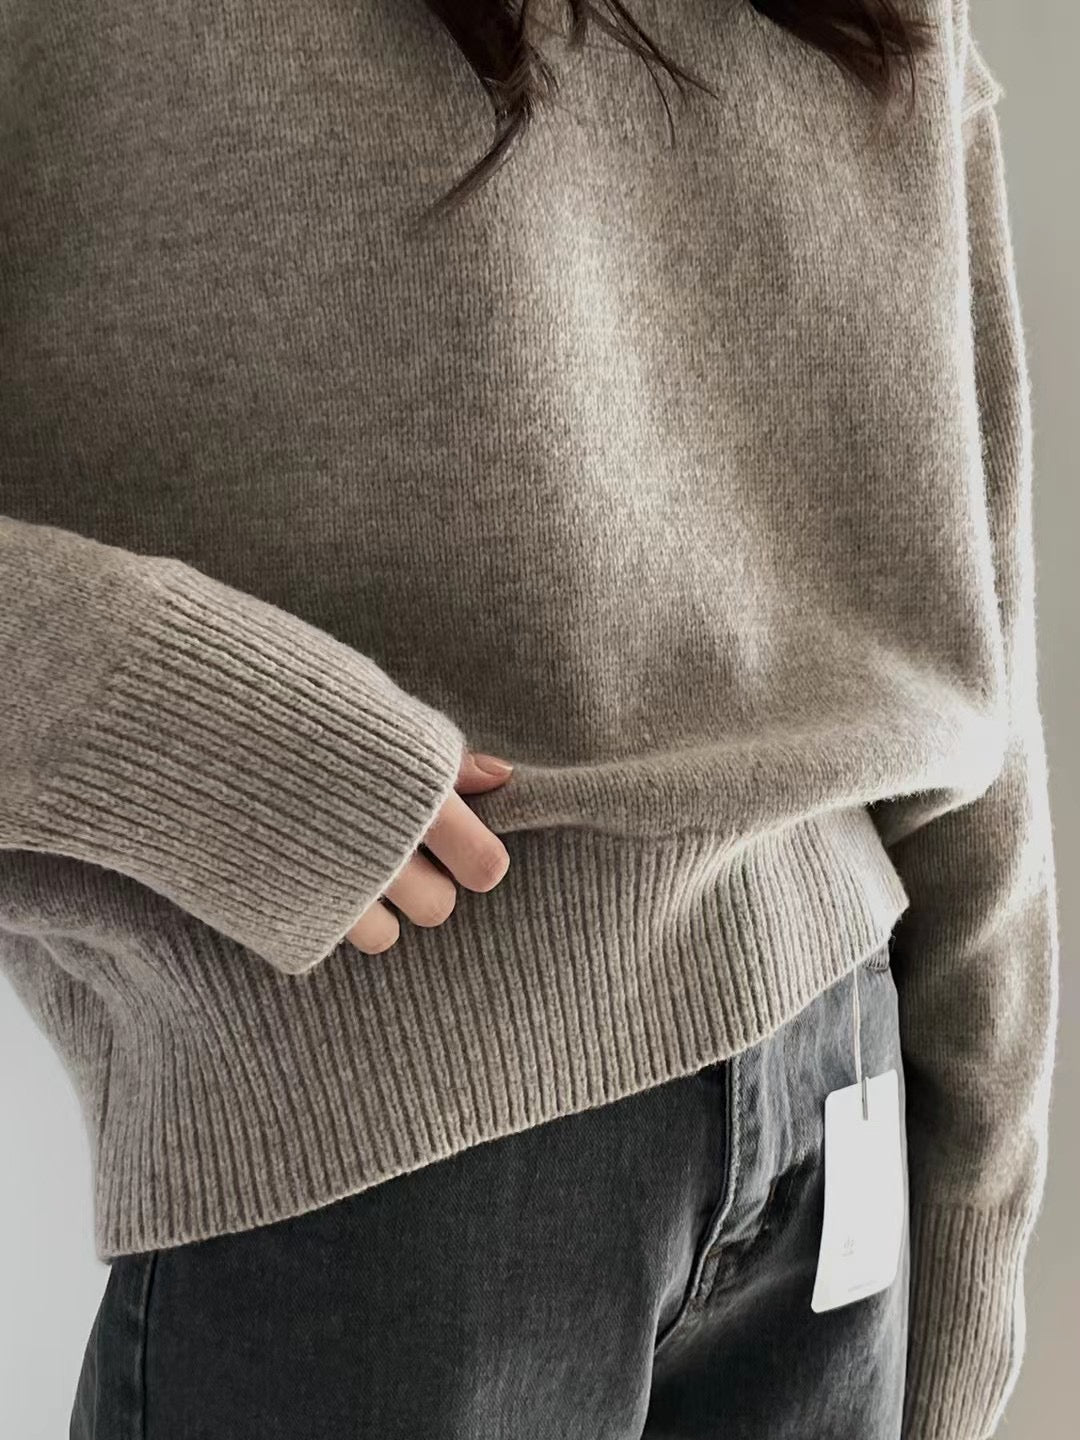 Sydney Wool Sweater in Beige Melange